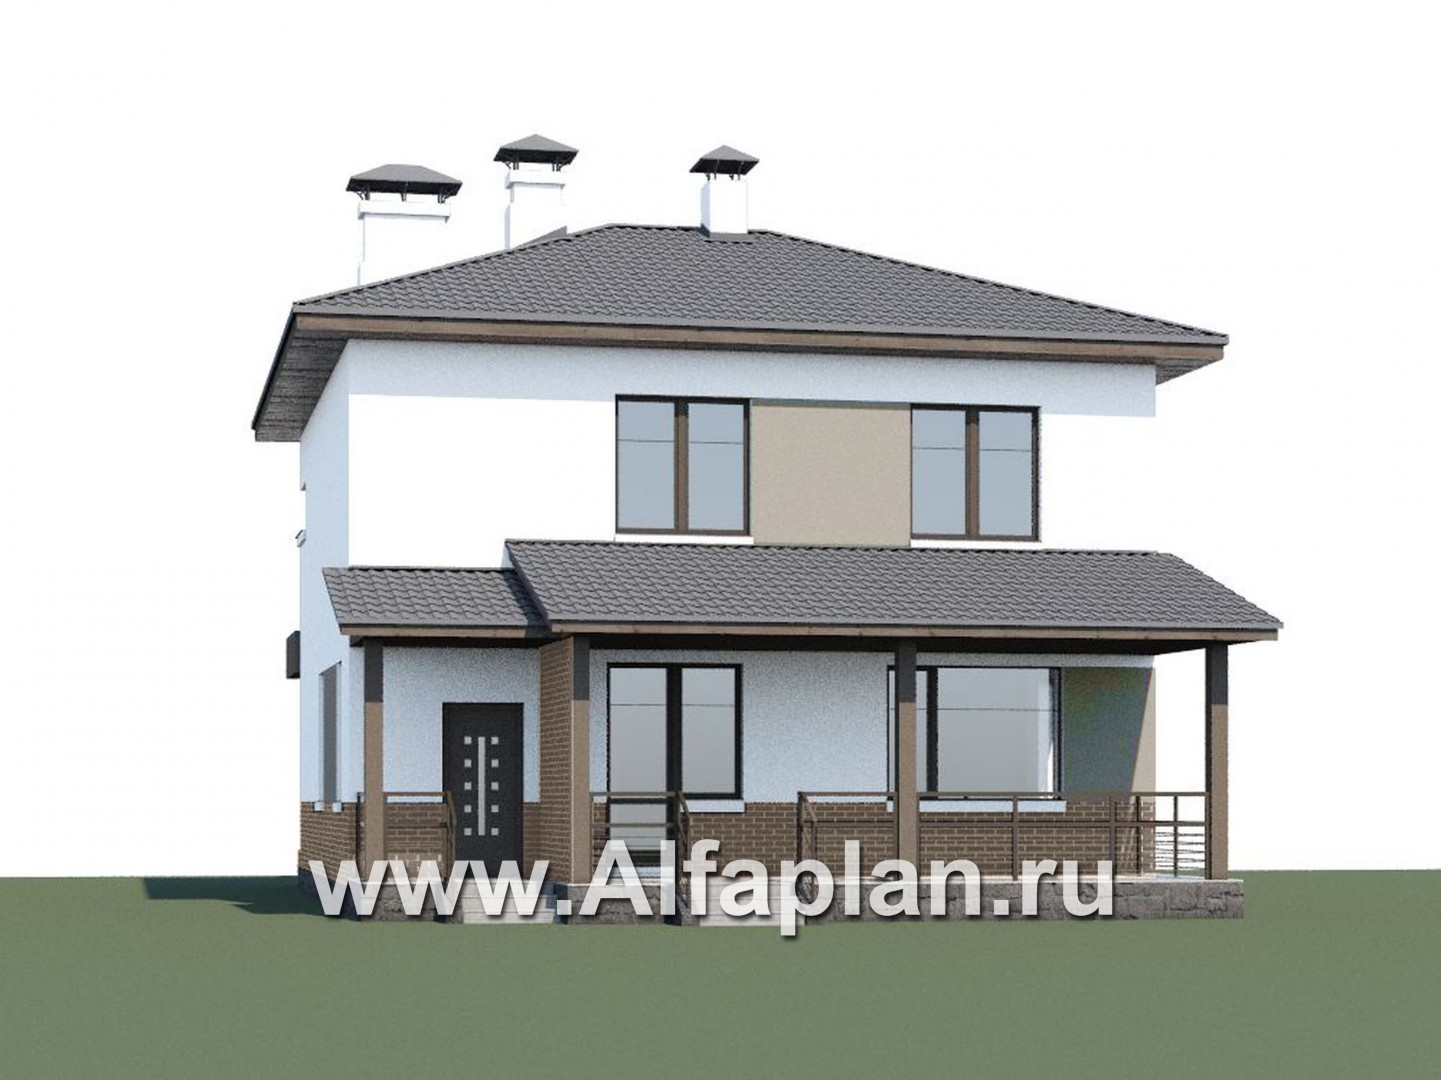 Проекты домов Альфаплан - «Приоритет» - экономичный и комфортный современный дом - дополнительное изображение №1